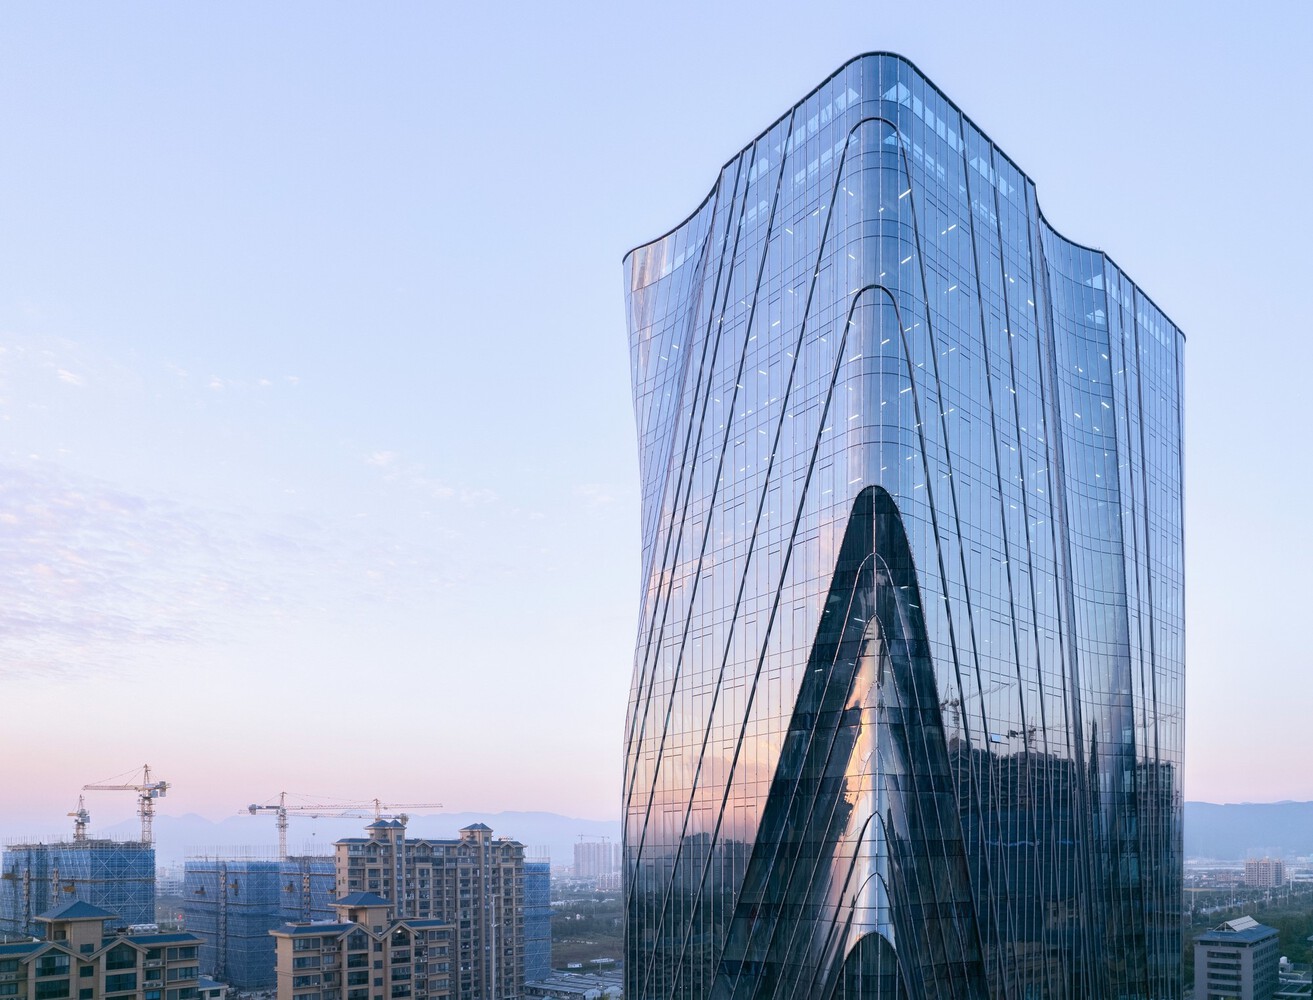 نمای شیشه ای در معماری برج اداری